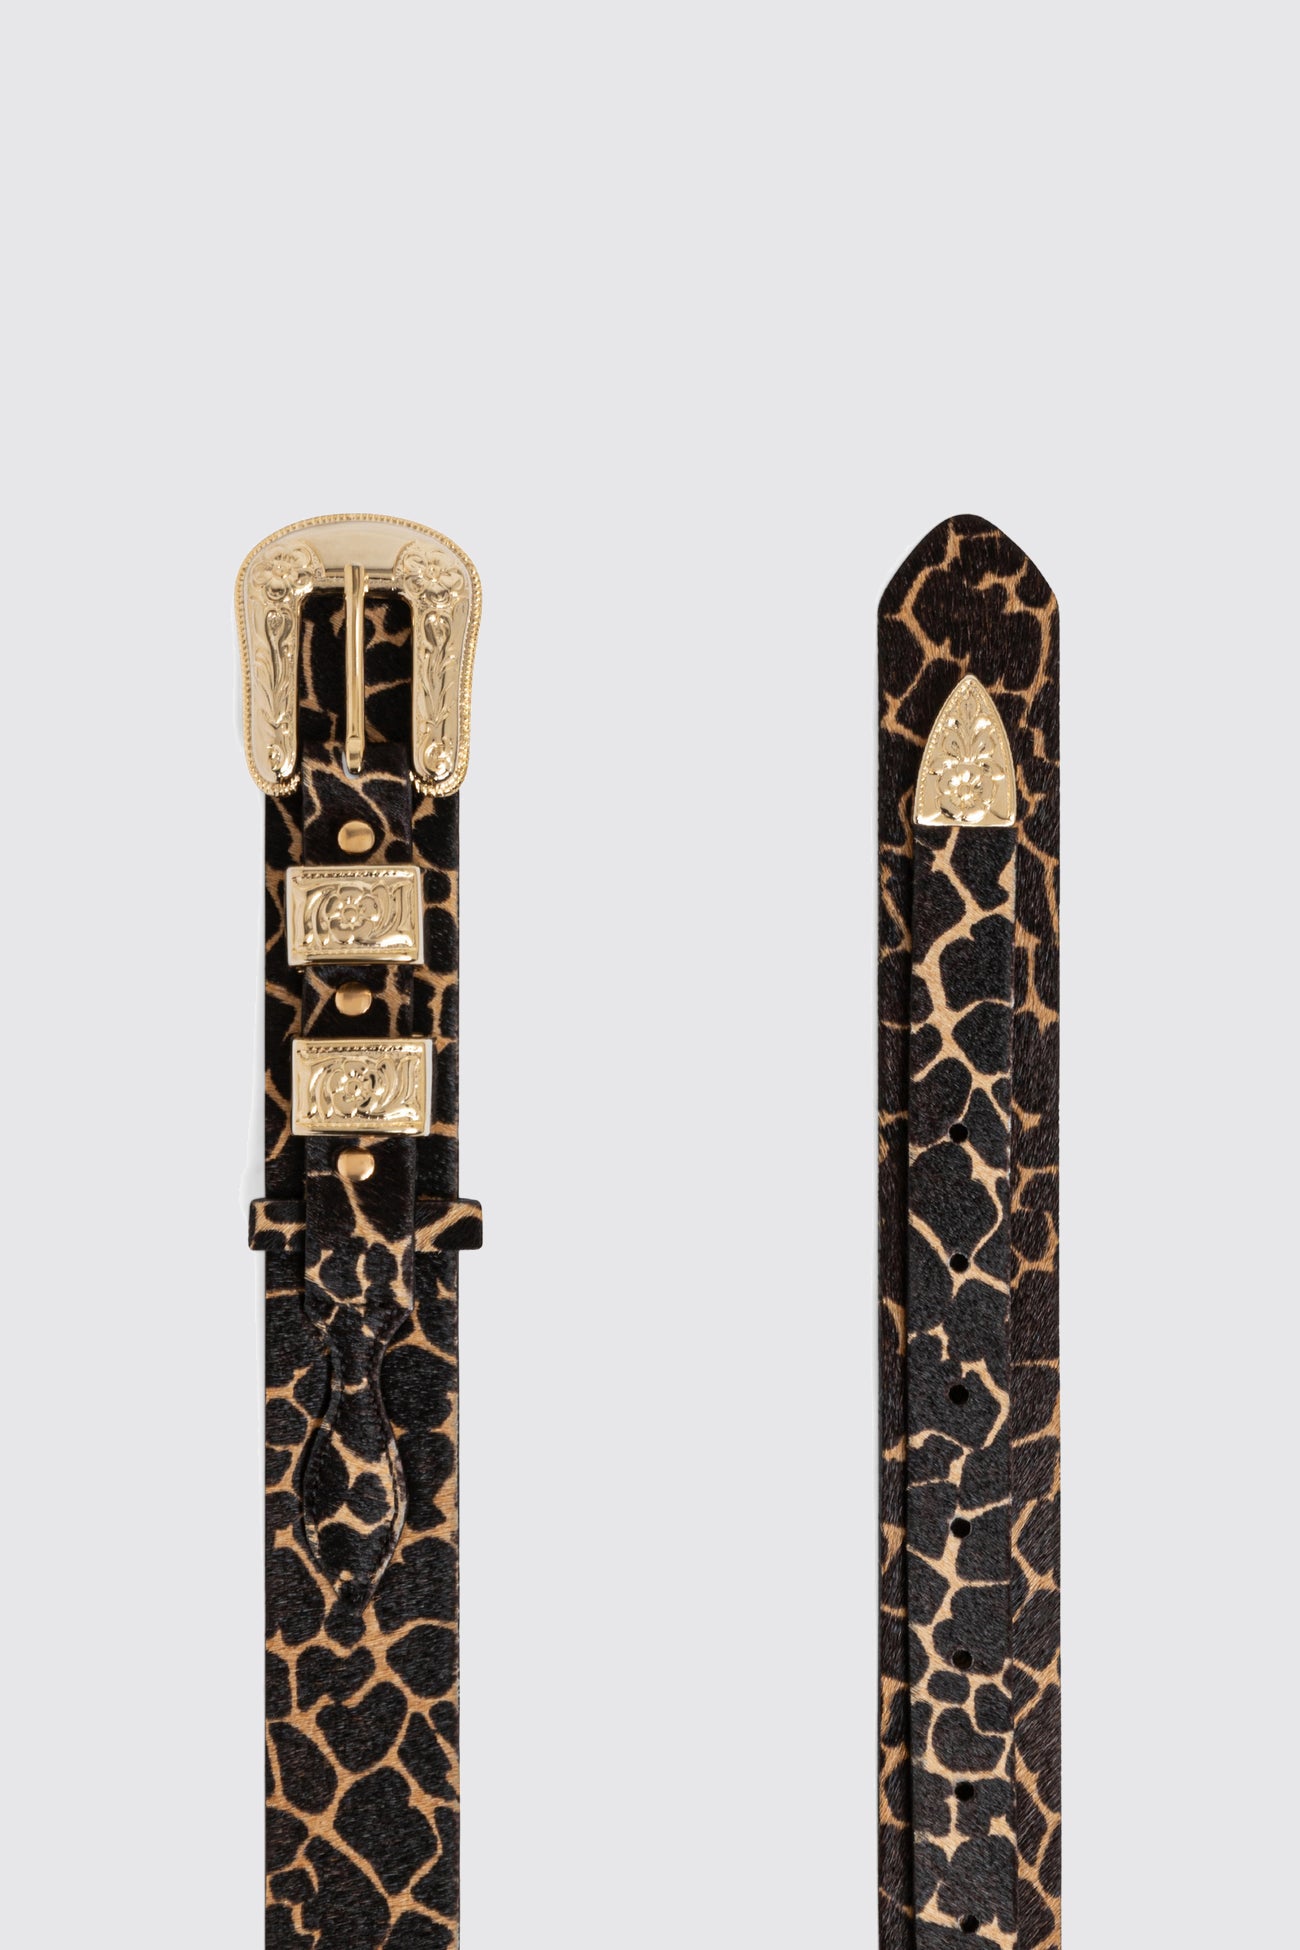 Texan belt in Giraffe printed leather